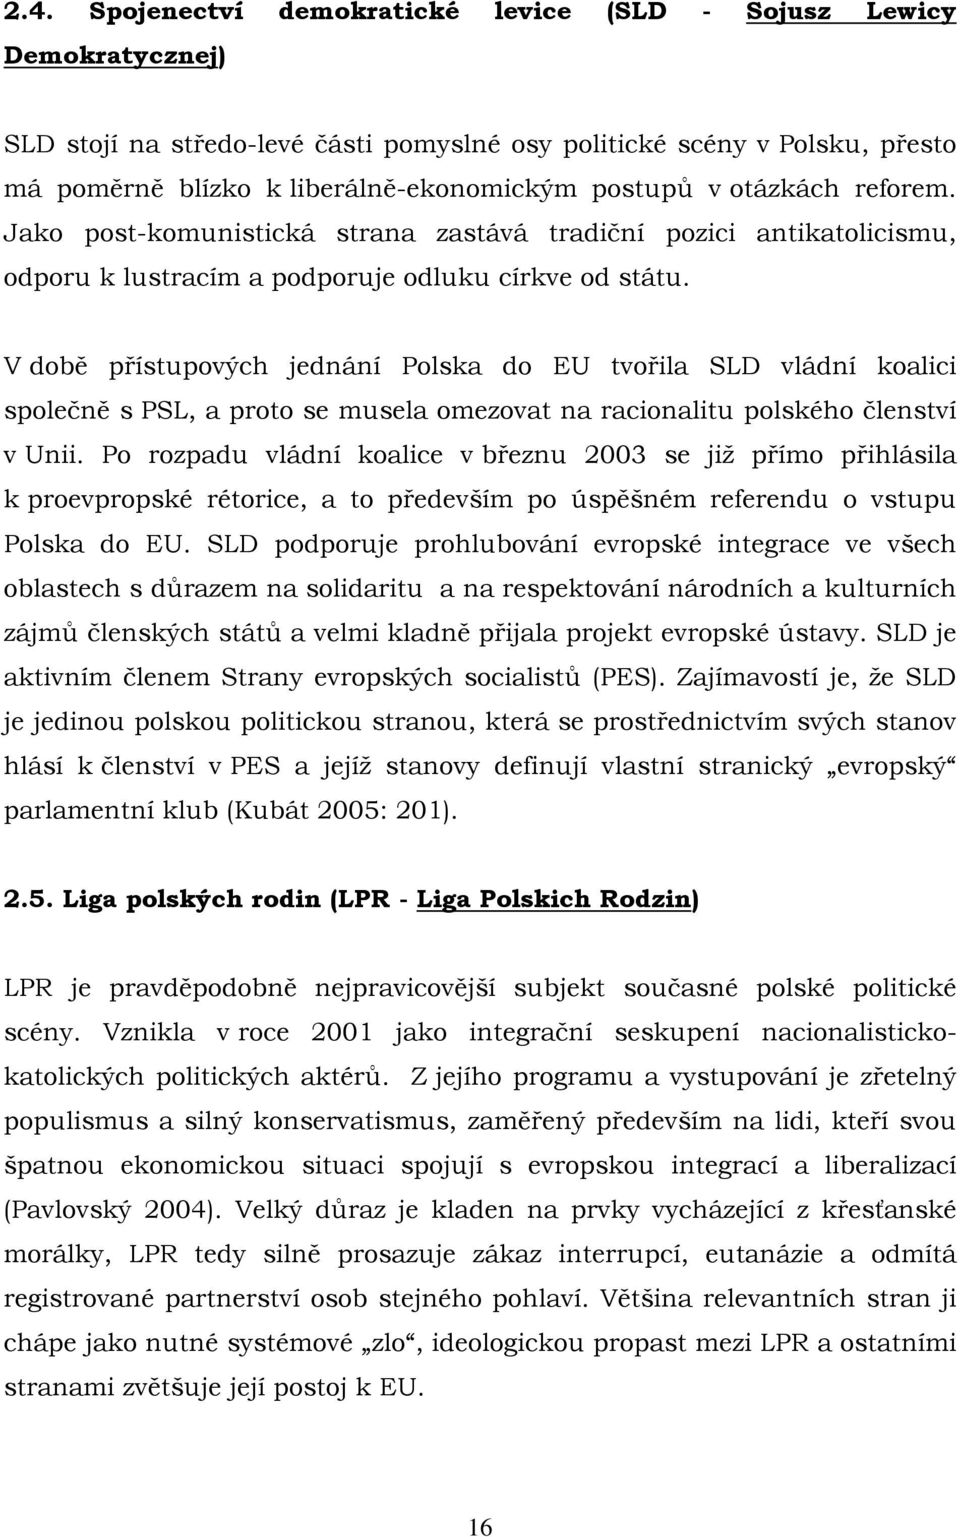 V době přístupových jednání Polska do EU tvořila SLD vládní koalici společně s PSL, a proto se musela omezovat na racionalitu polského členství v Unii.